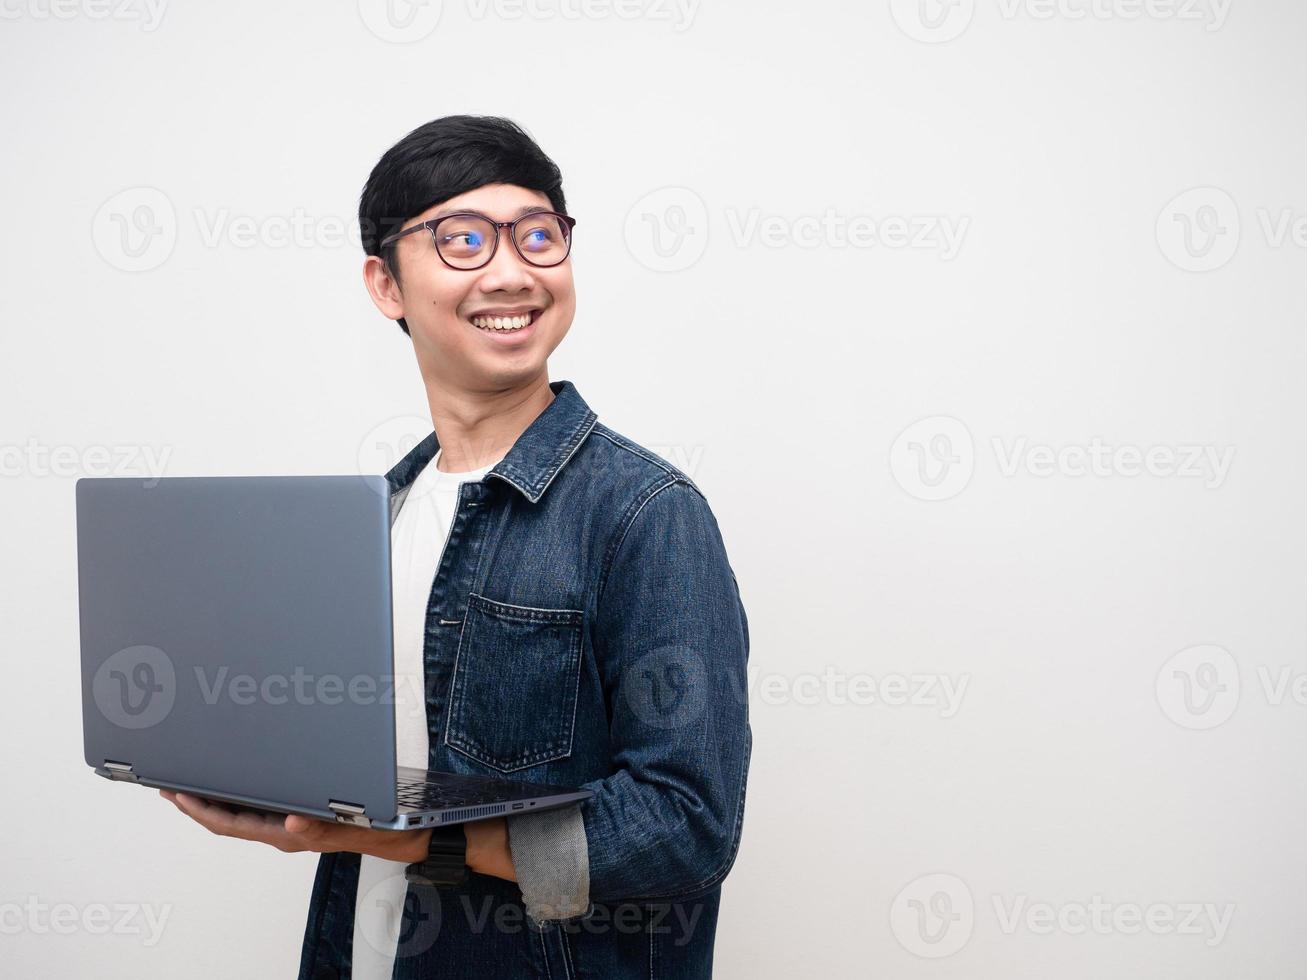 camisa de jeans de hombre alegre sosteniendo la computadora portátil girar la cara mirando el espacio de copia aislado foto